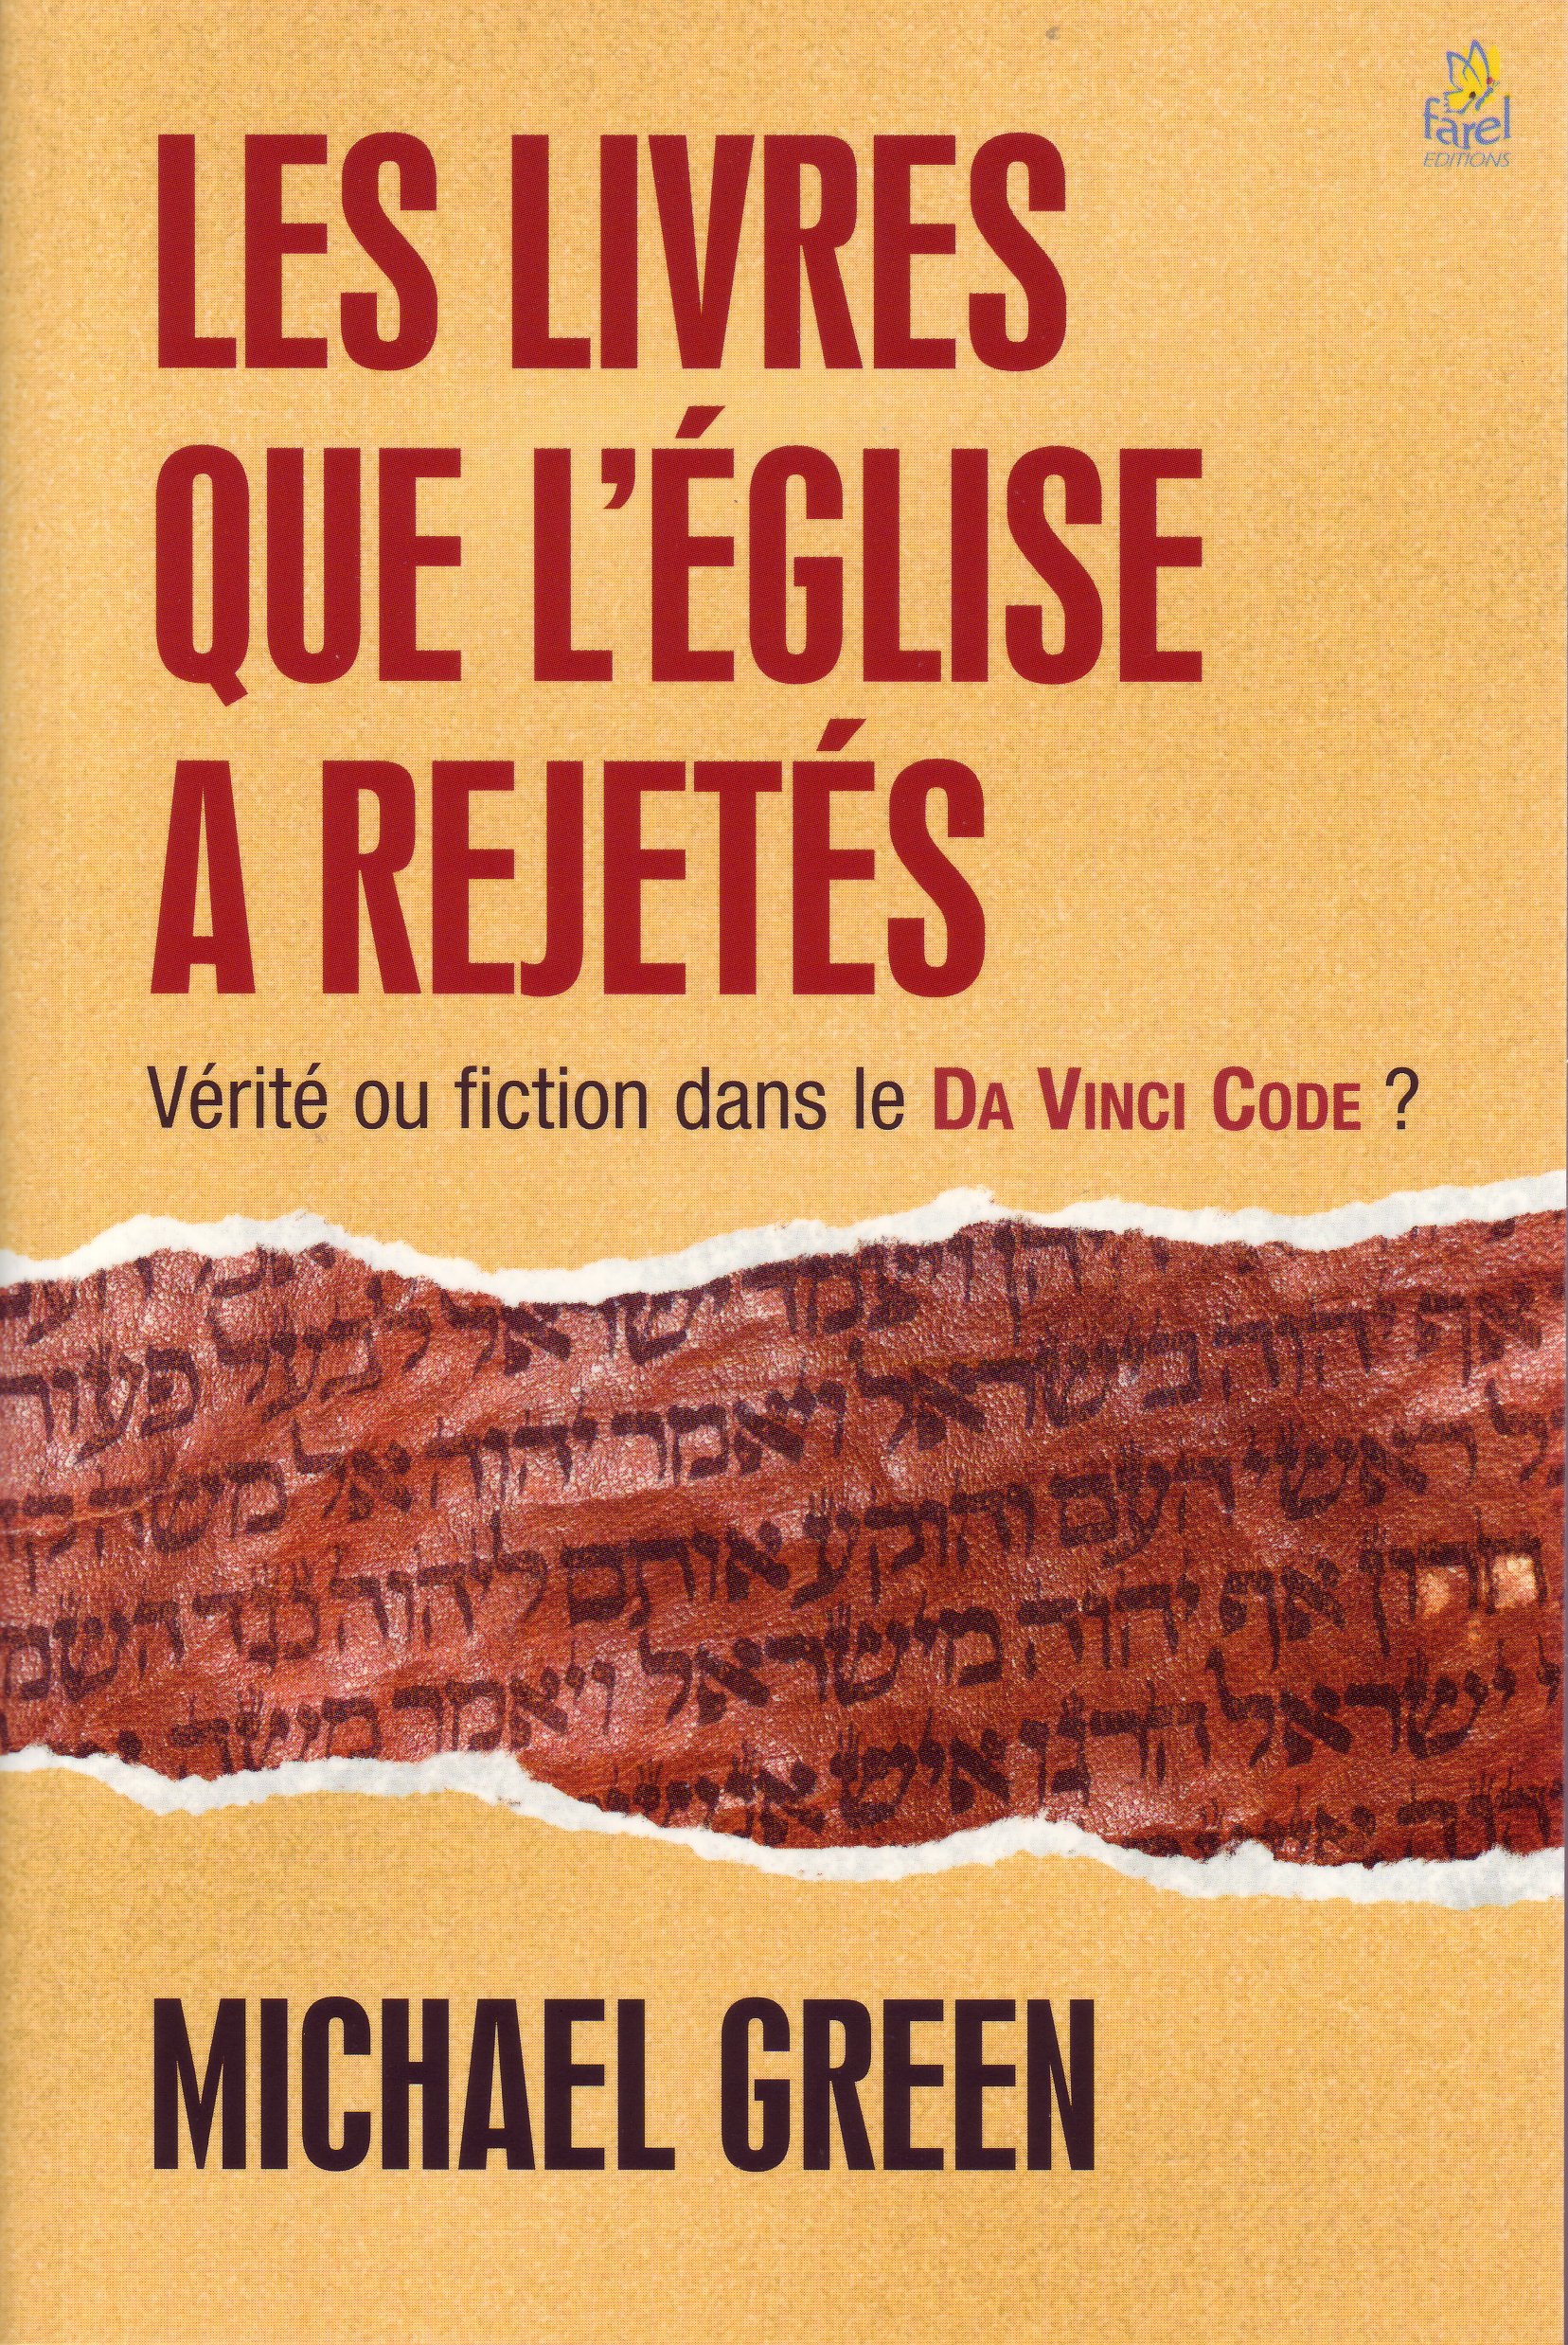 Livres que l’Église a rejetés (Les) - Vérité ou fiction dans le Da Vinci code?